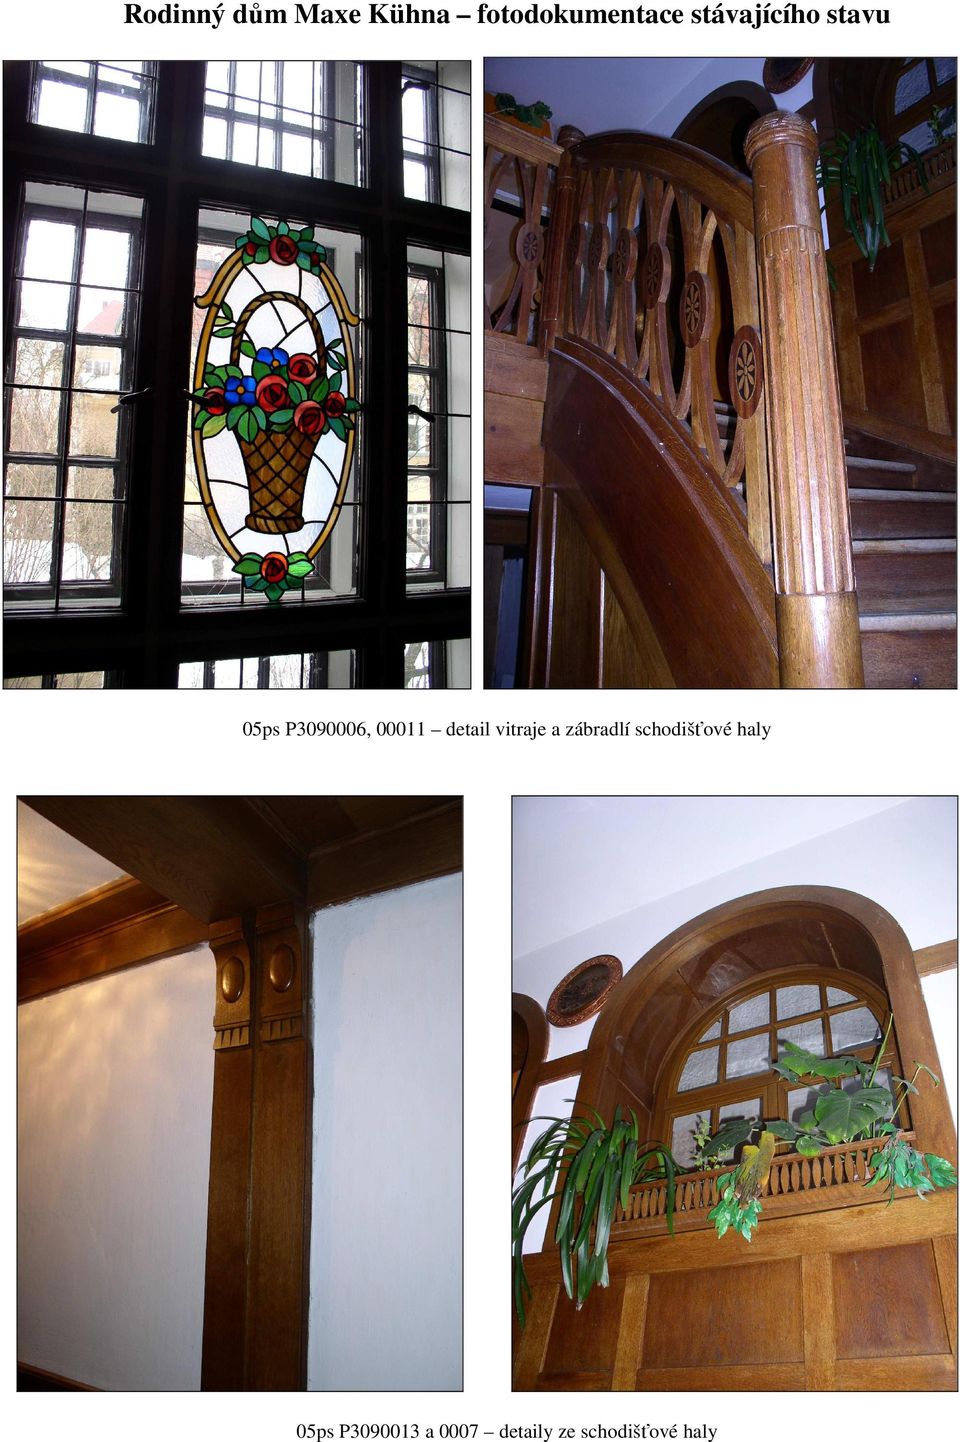 detail vitraje a zábradlí schodišťové haly